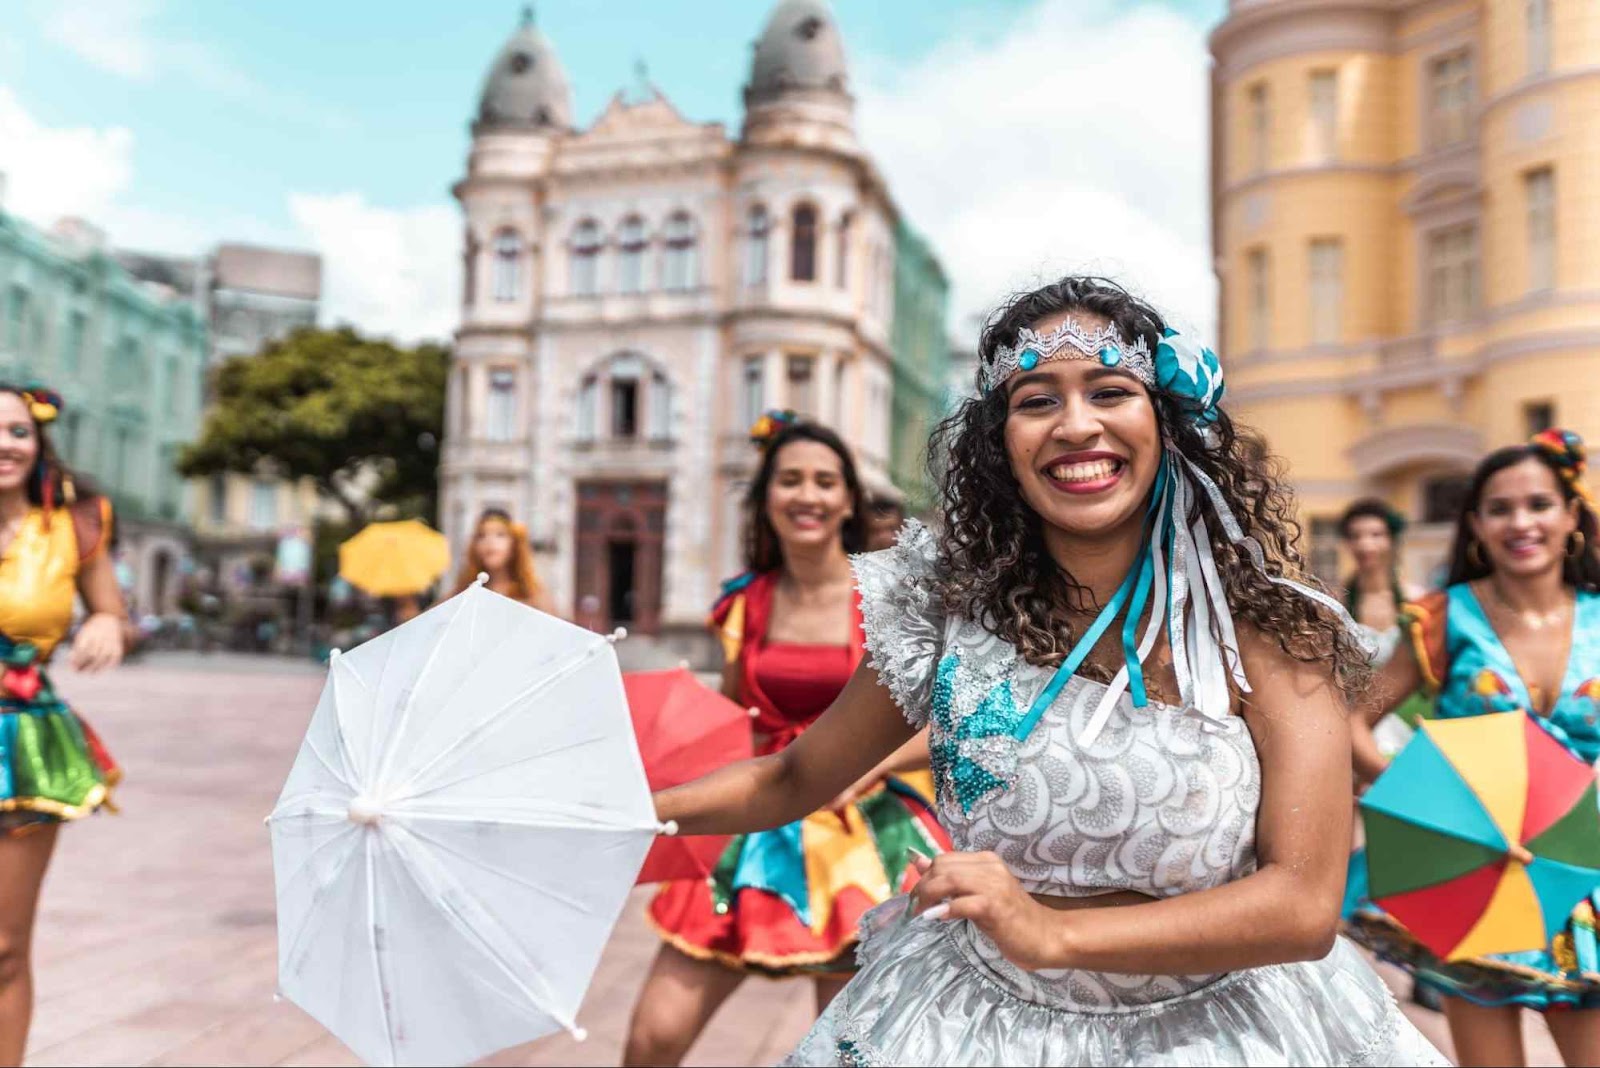 Passistas caracterizadas com trajes tradicionais do carnaval recifense. Elas dançam frevo em frente às construções históricas do Recife Antigo.